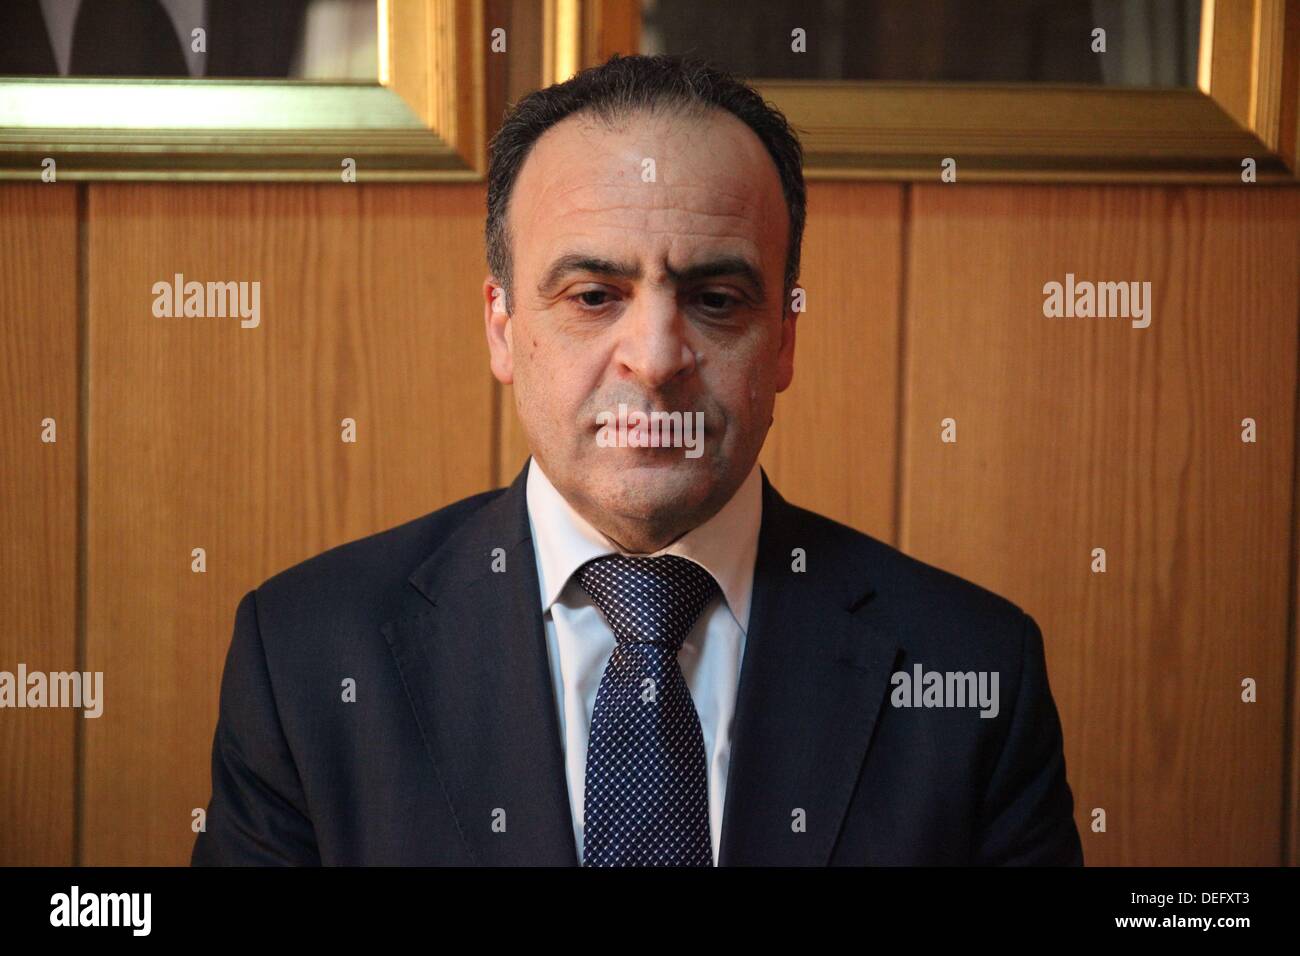 Emad Khamis, Imad Chamis, ministro dell energia elettrica in Damasco, Siria, su 2013-06-25. Imad Mohammad Deeb Khamis (nato il 1 agosto 1961) è il ministro siriano di elettricità, che serve a partire dal 2011. Egli è anche un membro del comitato centrale di Hizb al-Ba'ath (Baath) che è il più importante corpo del partito Baath. Khamis è nato vicino a Damasco il 1 agosto 1961.[1] ha conseguito una laurea in ingegneria elettrica presso l'Università di Damasco nel 1981. Khamis è stato assegnato per la gestione di un numero di reparti dell'organizzazione generale per la distribuzione e la potenza degli investimenti dal 1987 Foto Stock